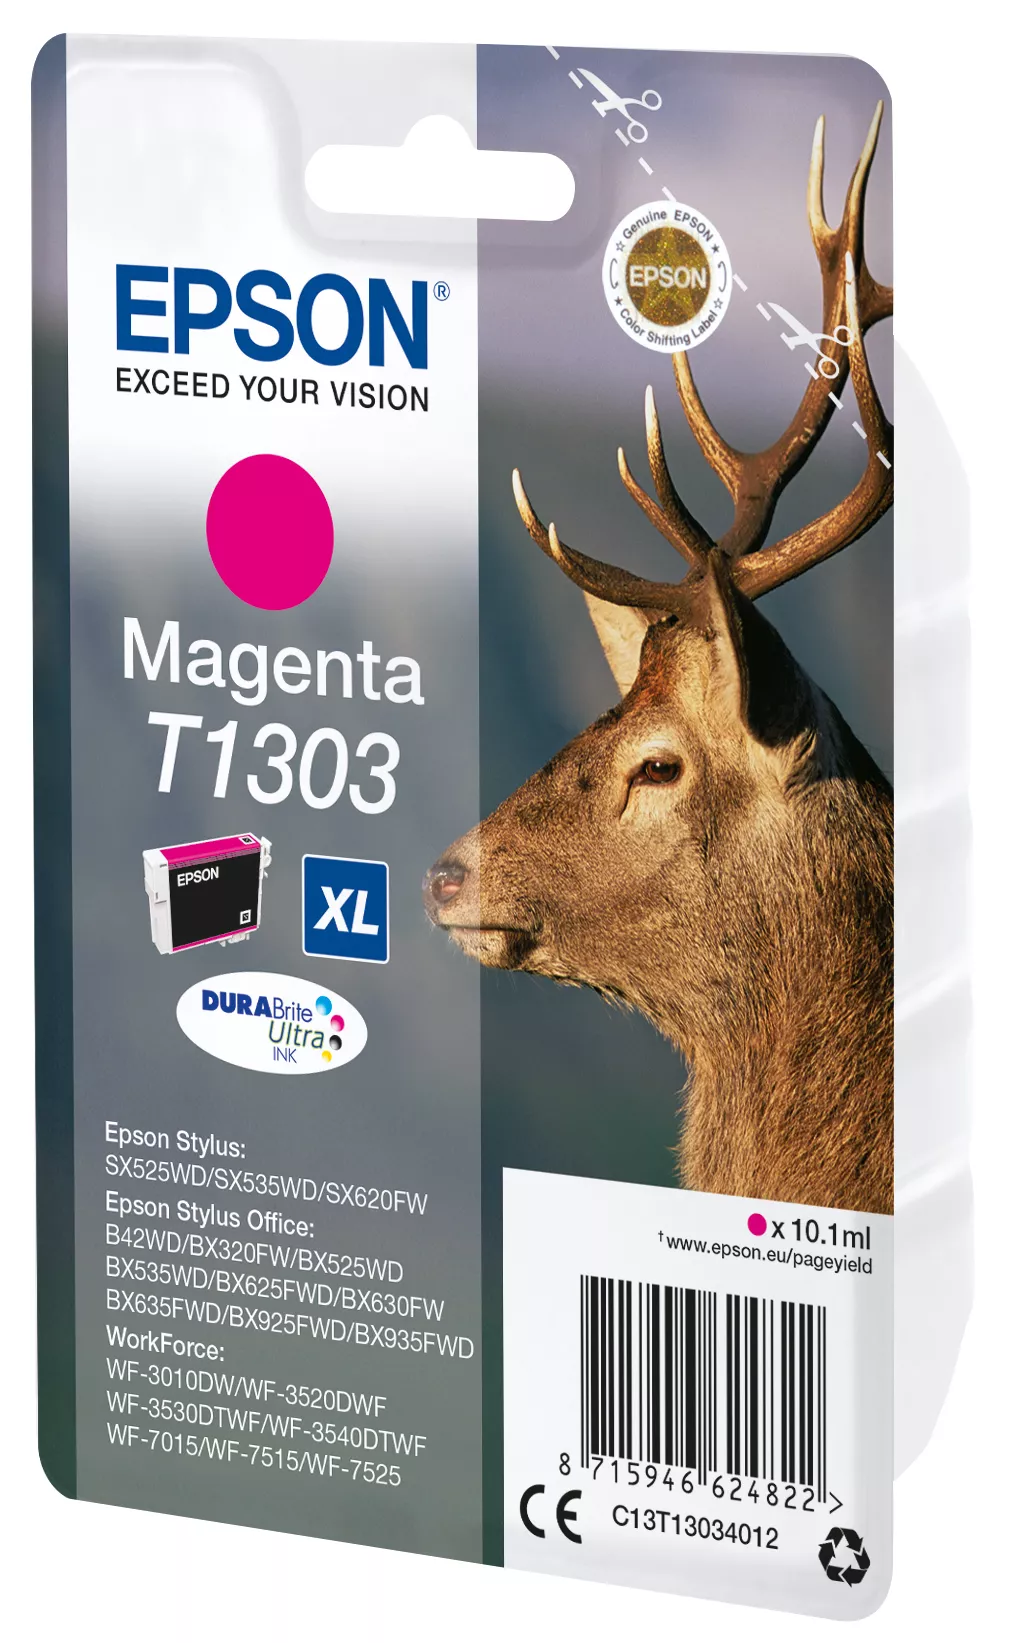 Vente EPSON T1303 cartouche d encre magenta très haute Epson au meilleur prix - visuel 2